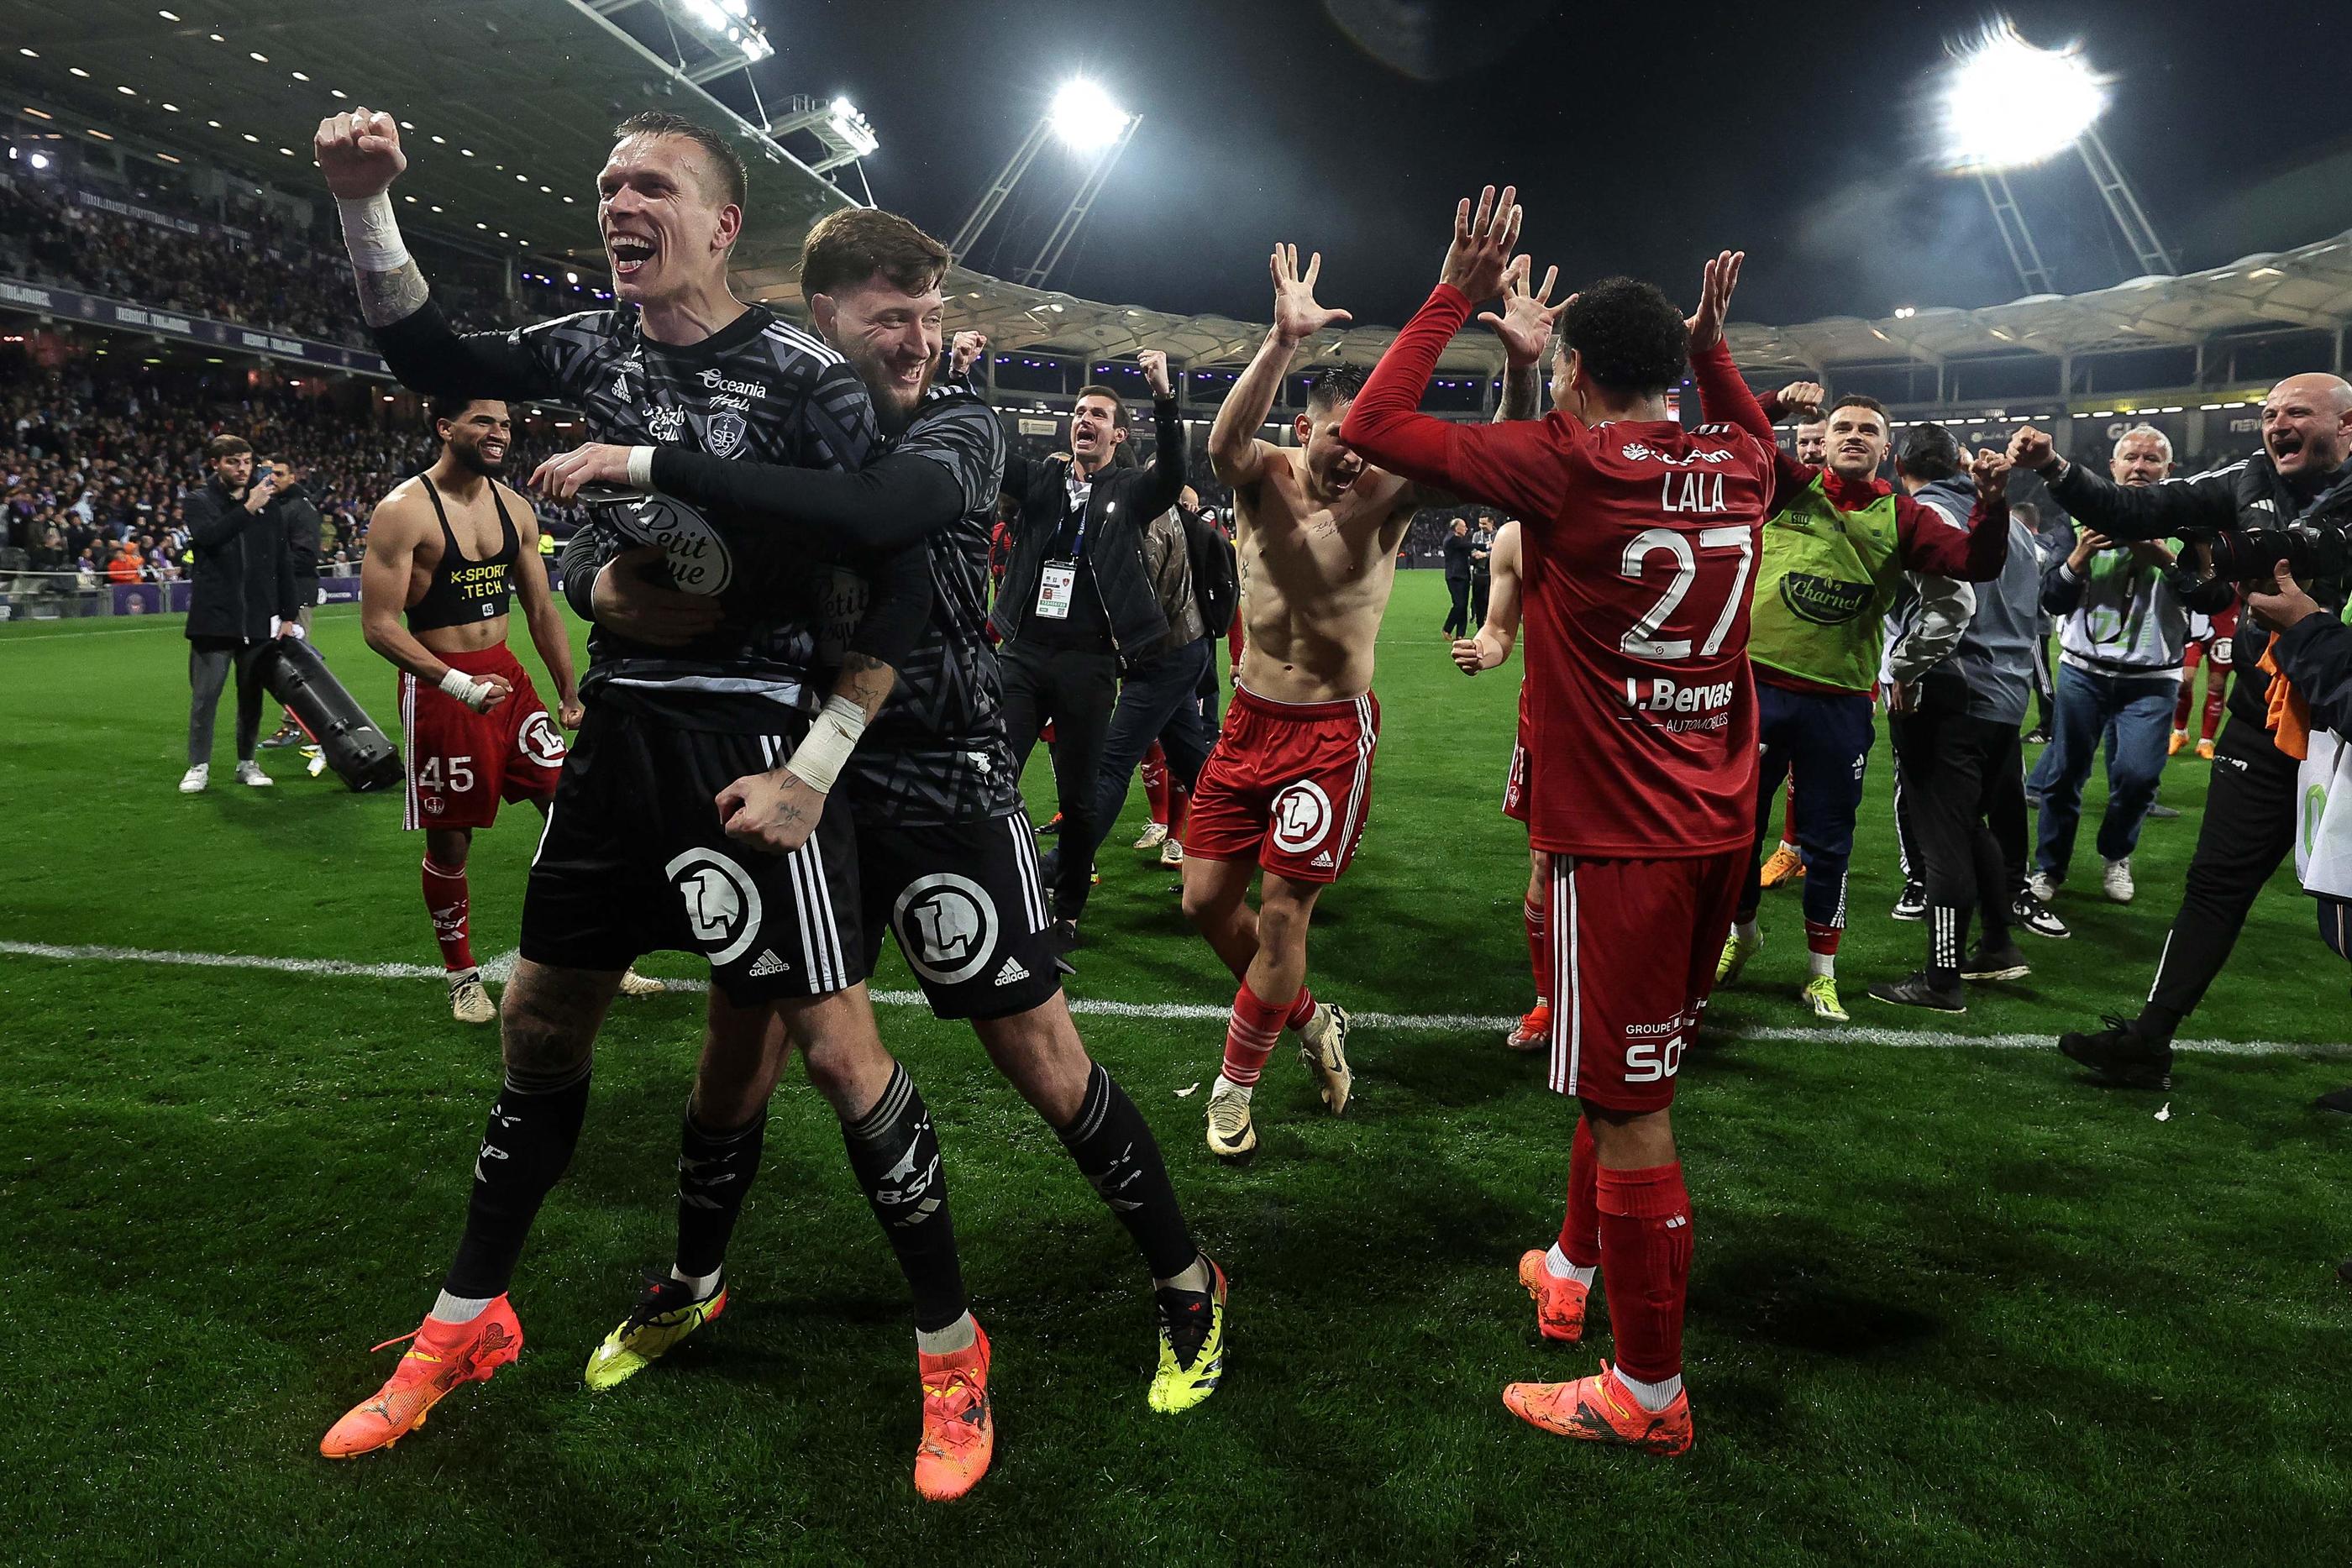 Les Brestois célèbrent leur qualification en Ligue des champions sur la pelouse de Toulouse après leur victoire en Haute-Garonne. (Photo by Valentine CHAPUIS / AFP)